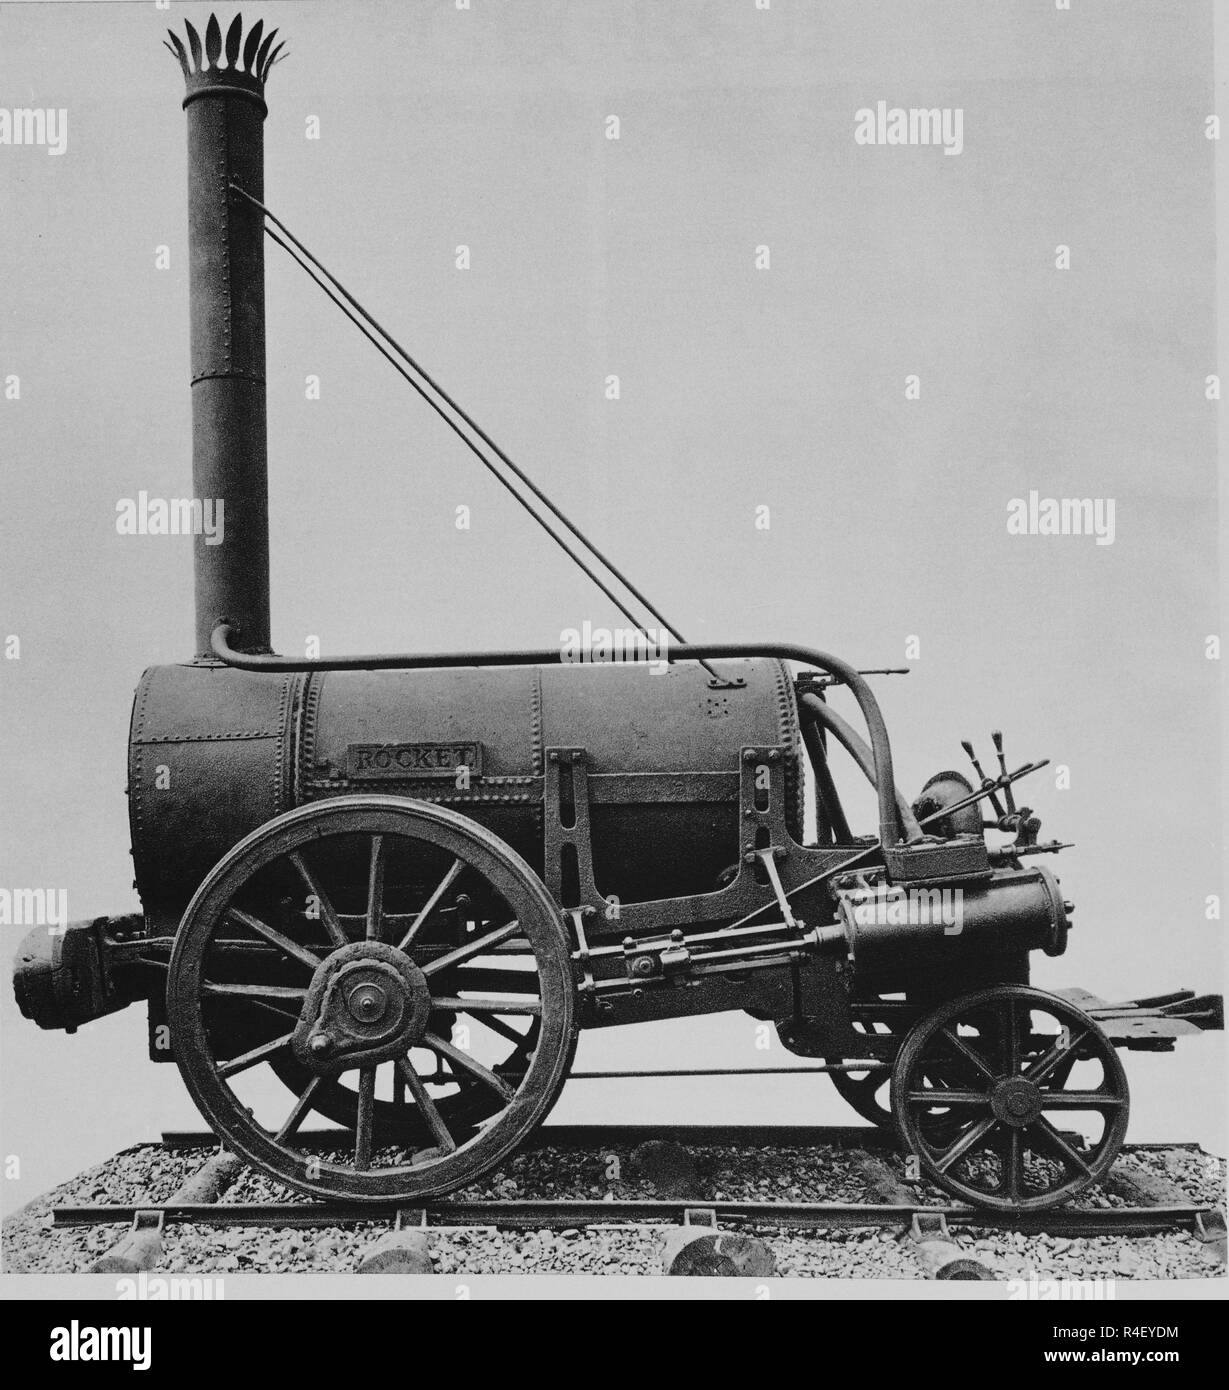 Dampflok, genannt "die Rakete" - 1829. Autor: STEPHENSON, George. Standort: Private Collection. Stockfoto